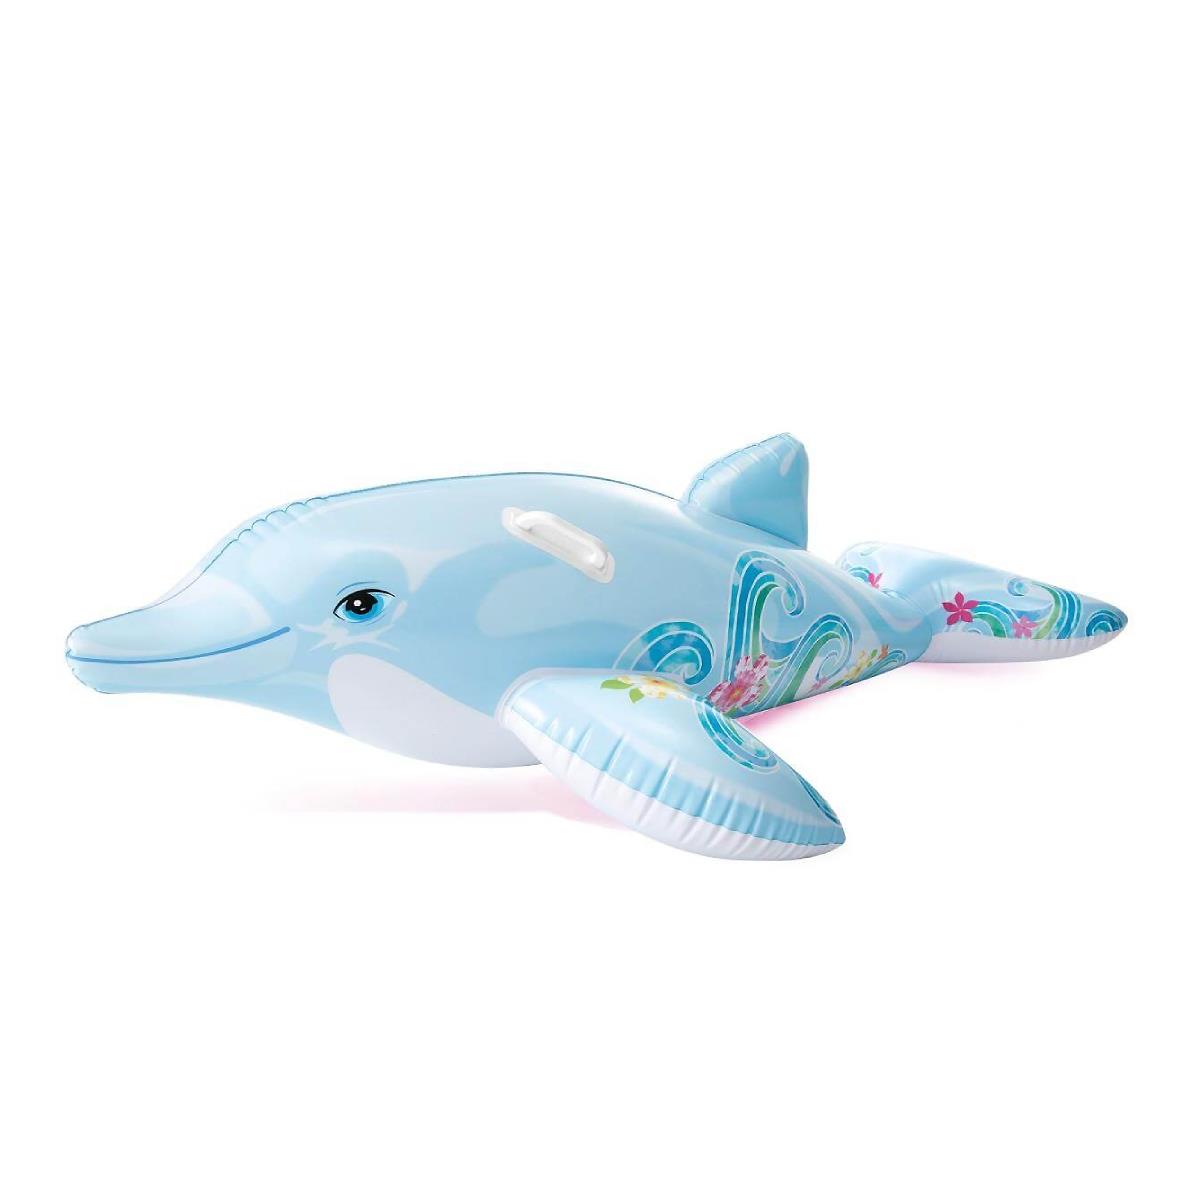 Игрушка надувная Дельфин (58535)  INTEX игрушка наездник надувная краб 2 13х1 37м от 3 лет 57528 intex